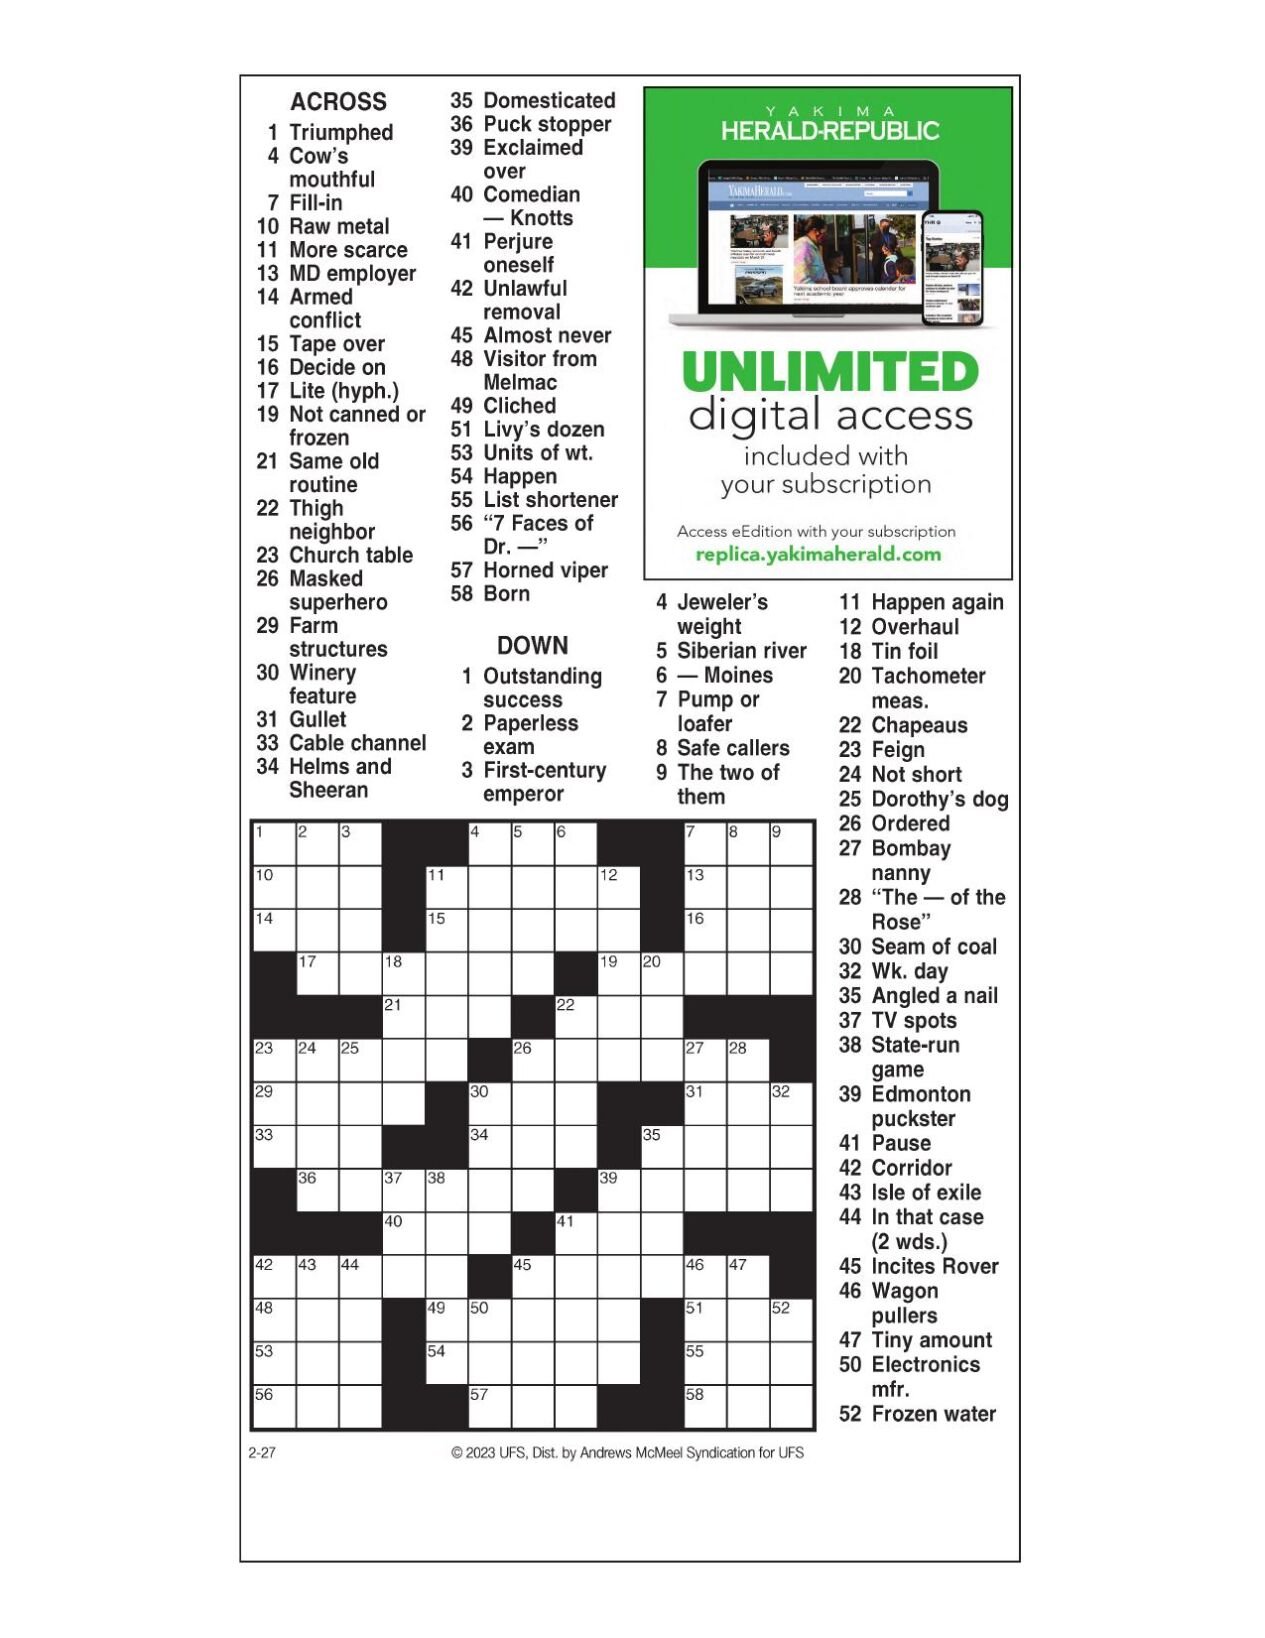 AM Crossword: Feb 27 2023 Crosswords yakimaherald com